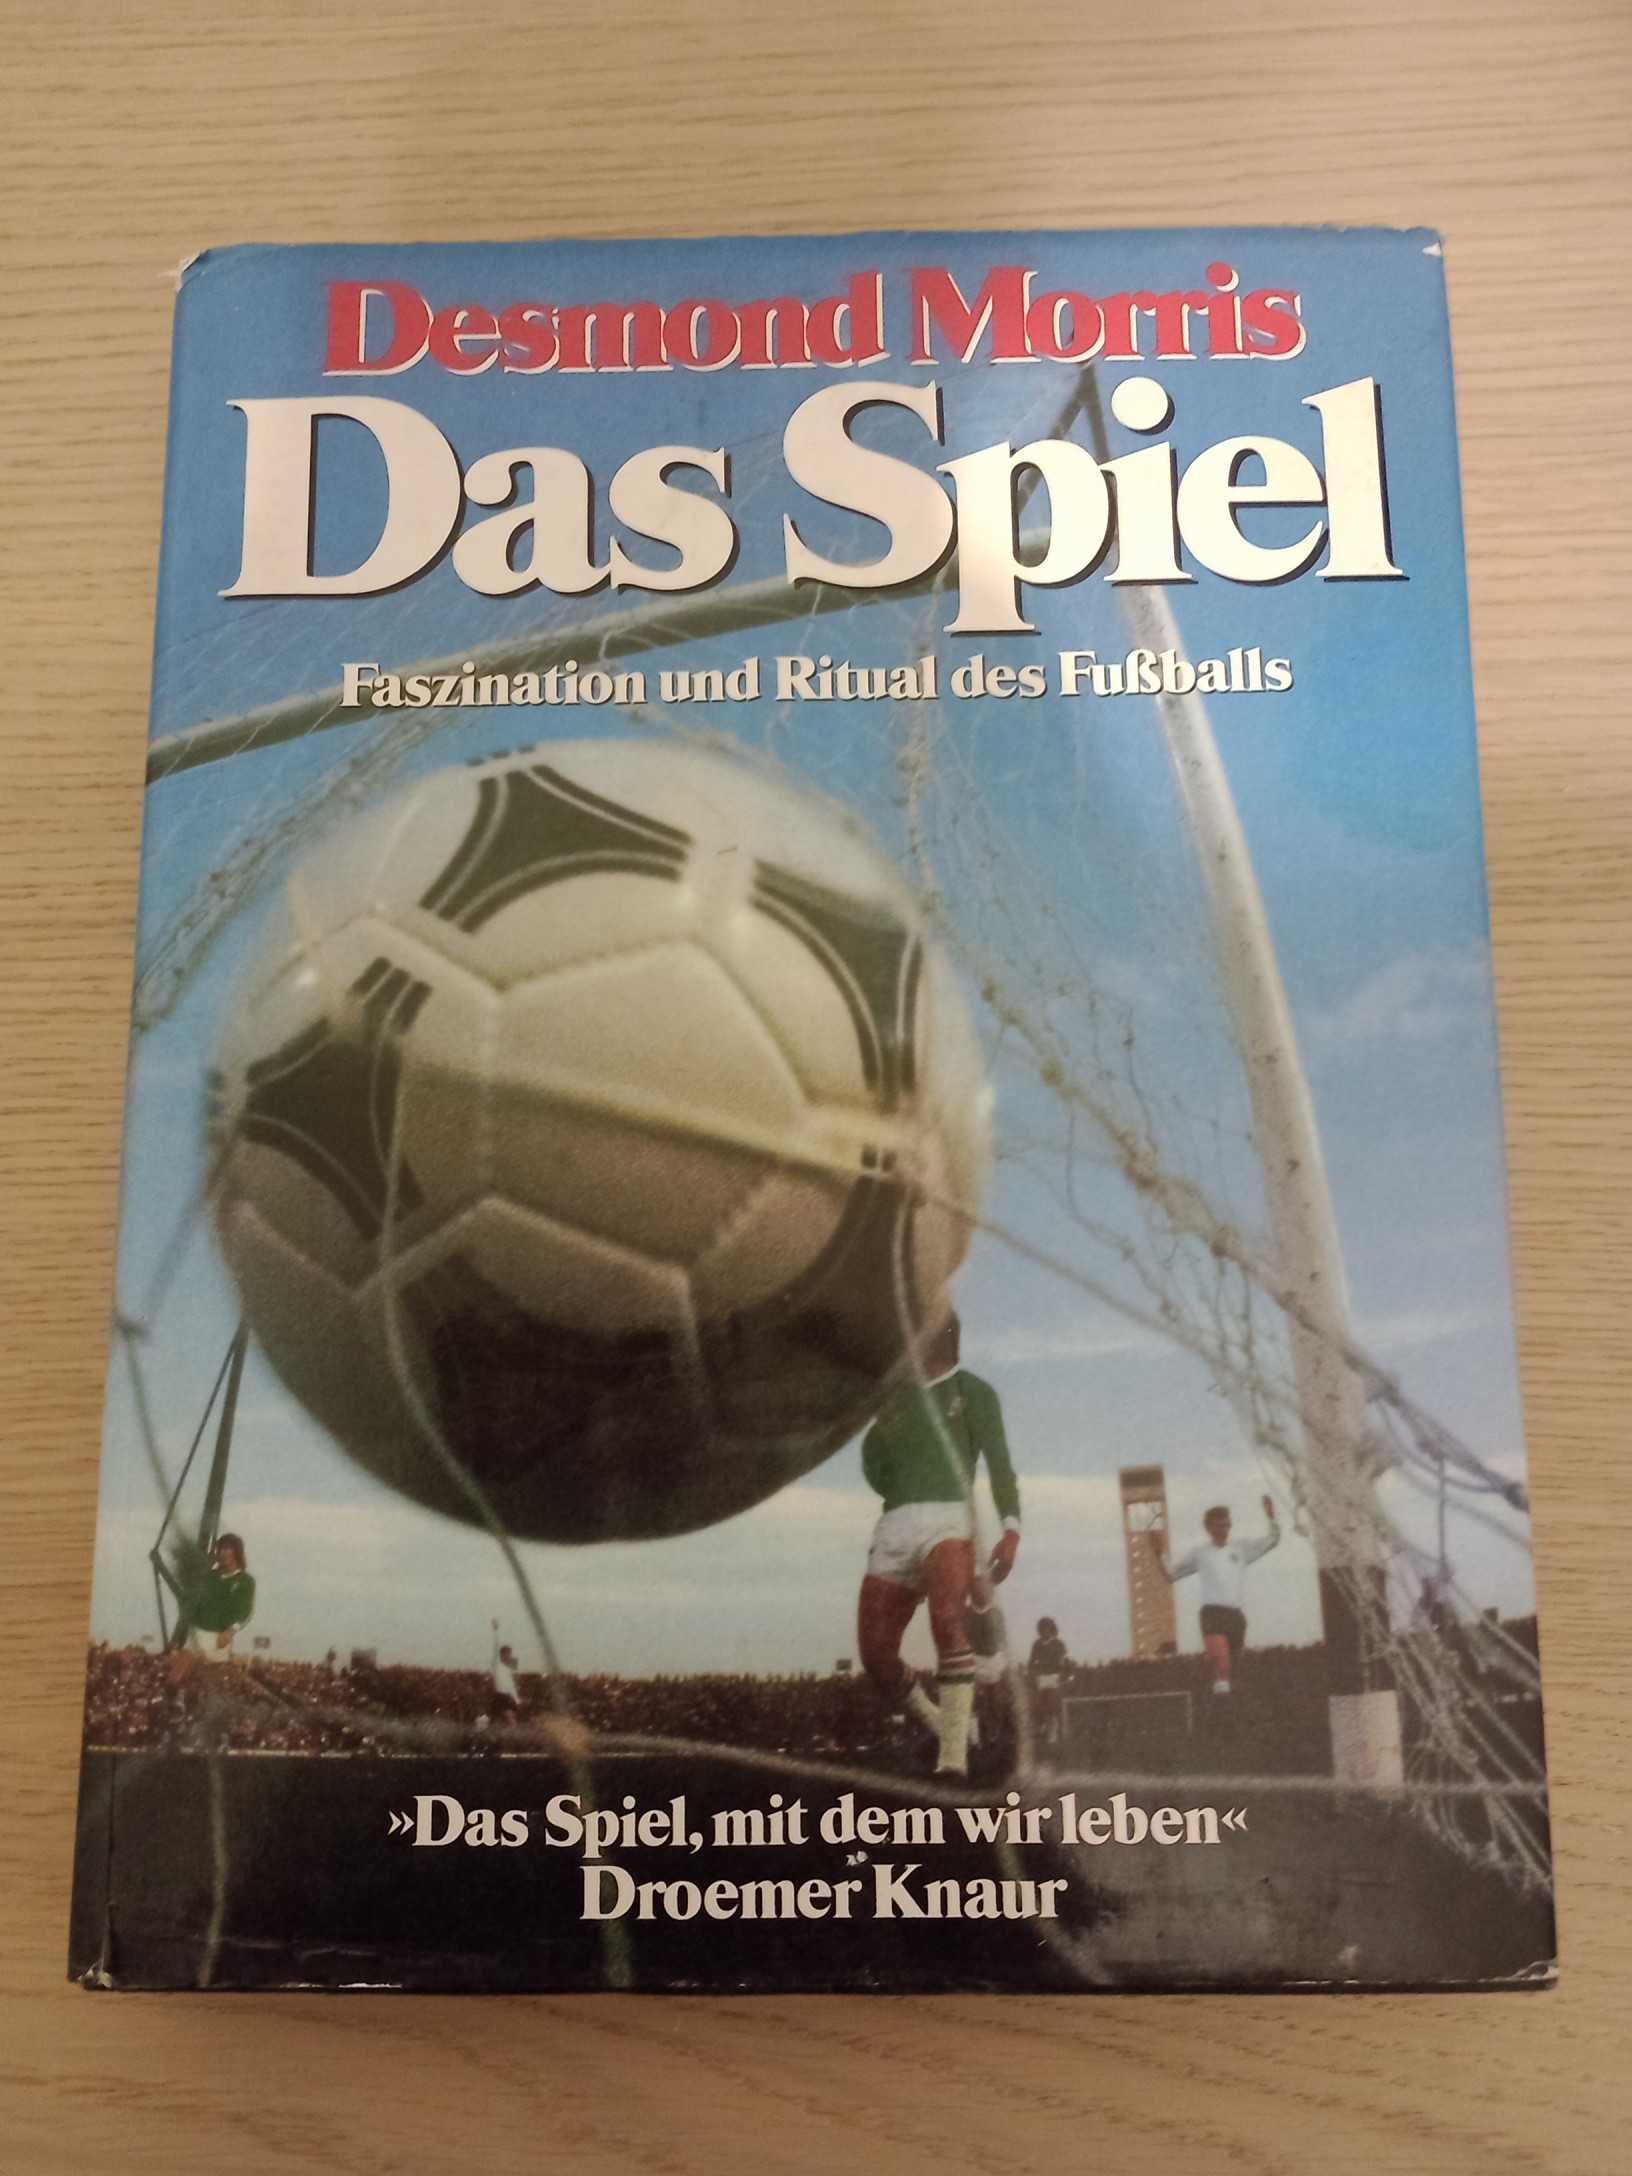 Das Spiel Desmond Morris po niemiecku auf Deutsch